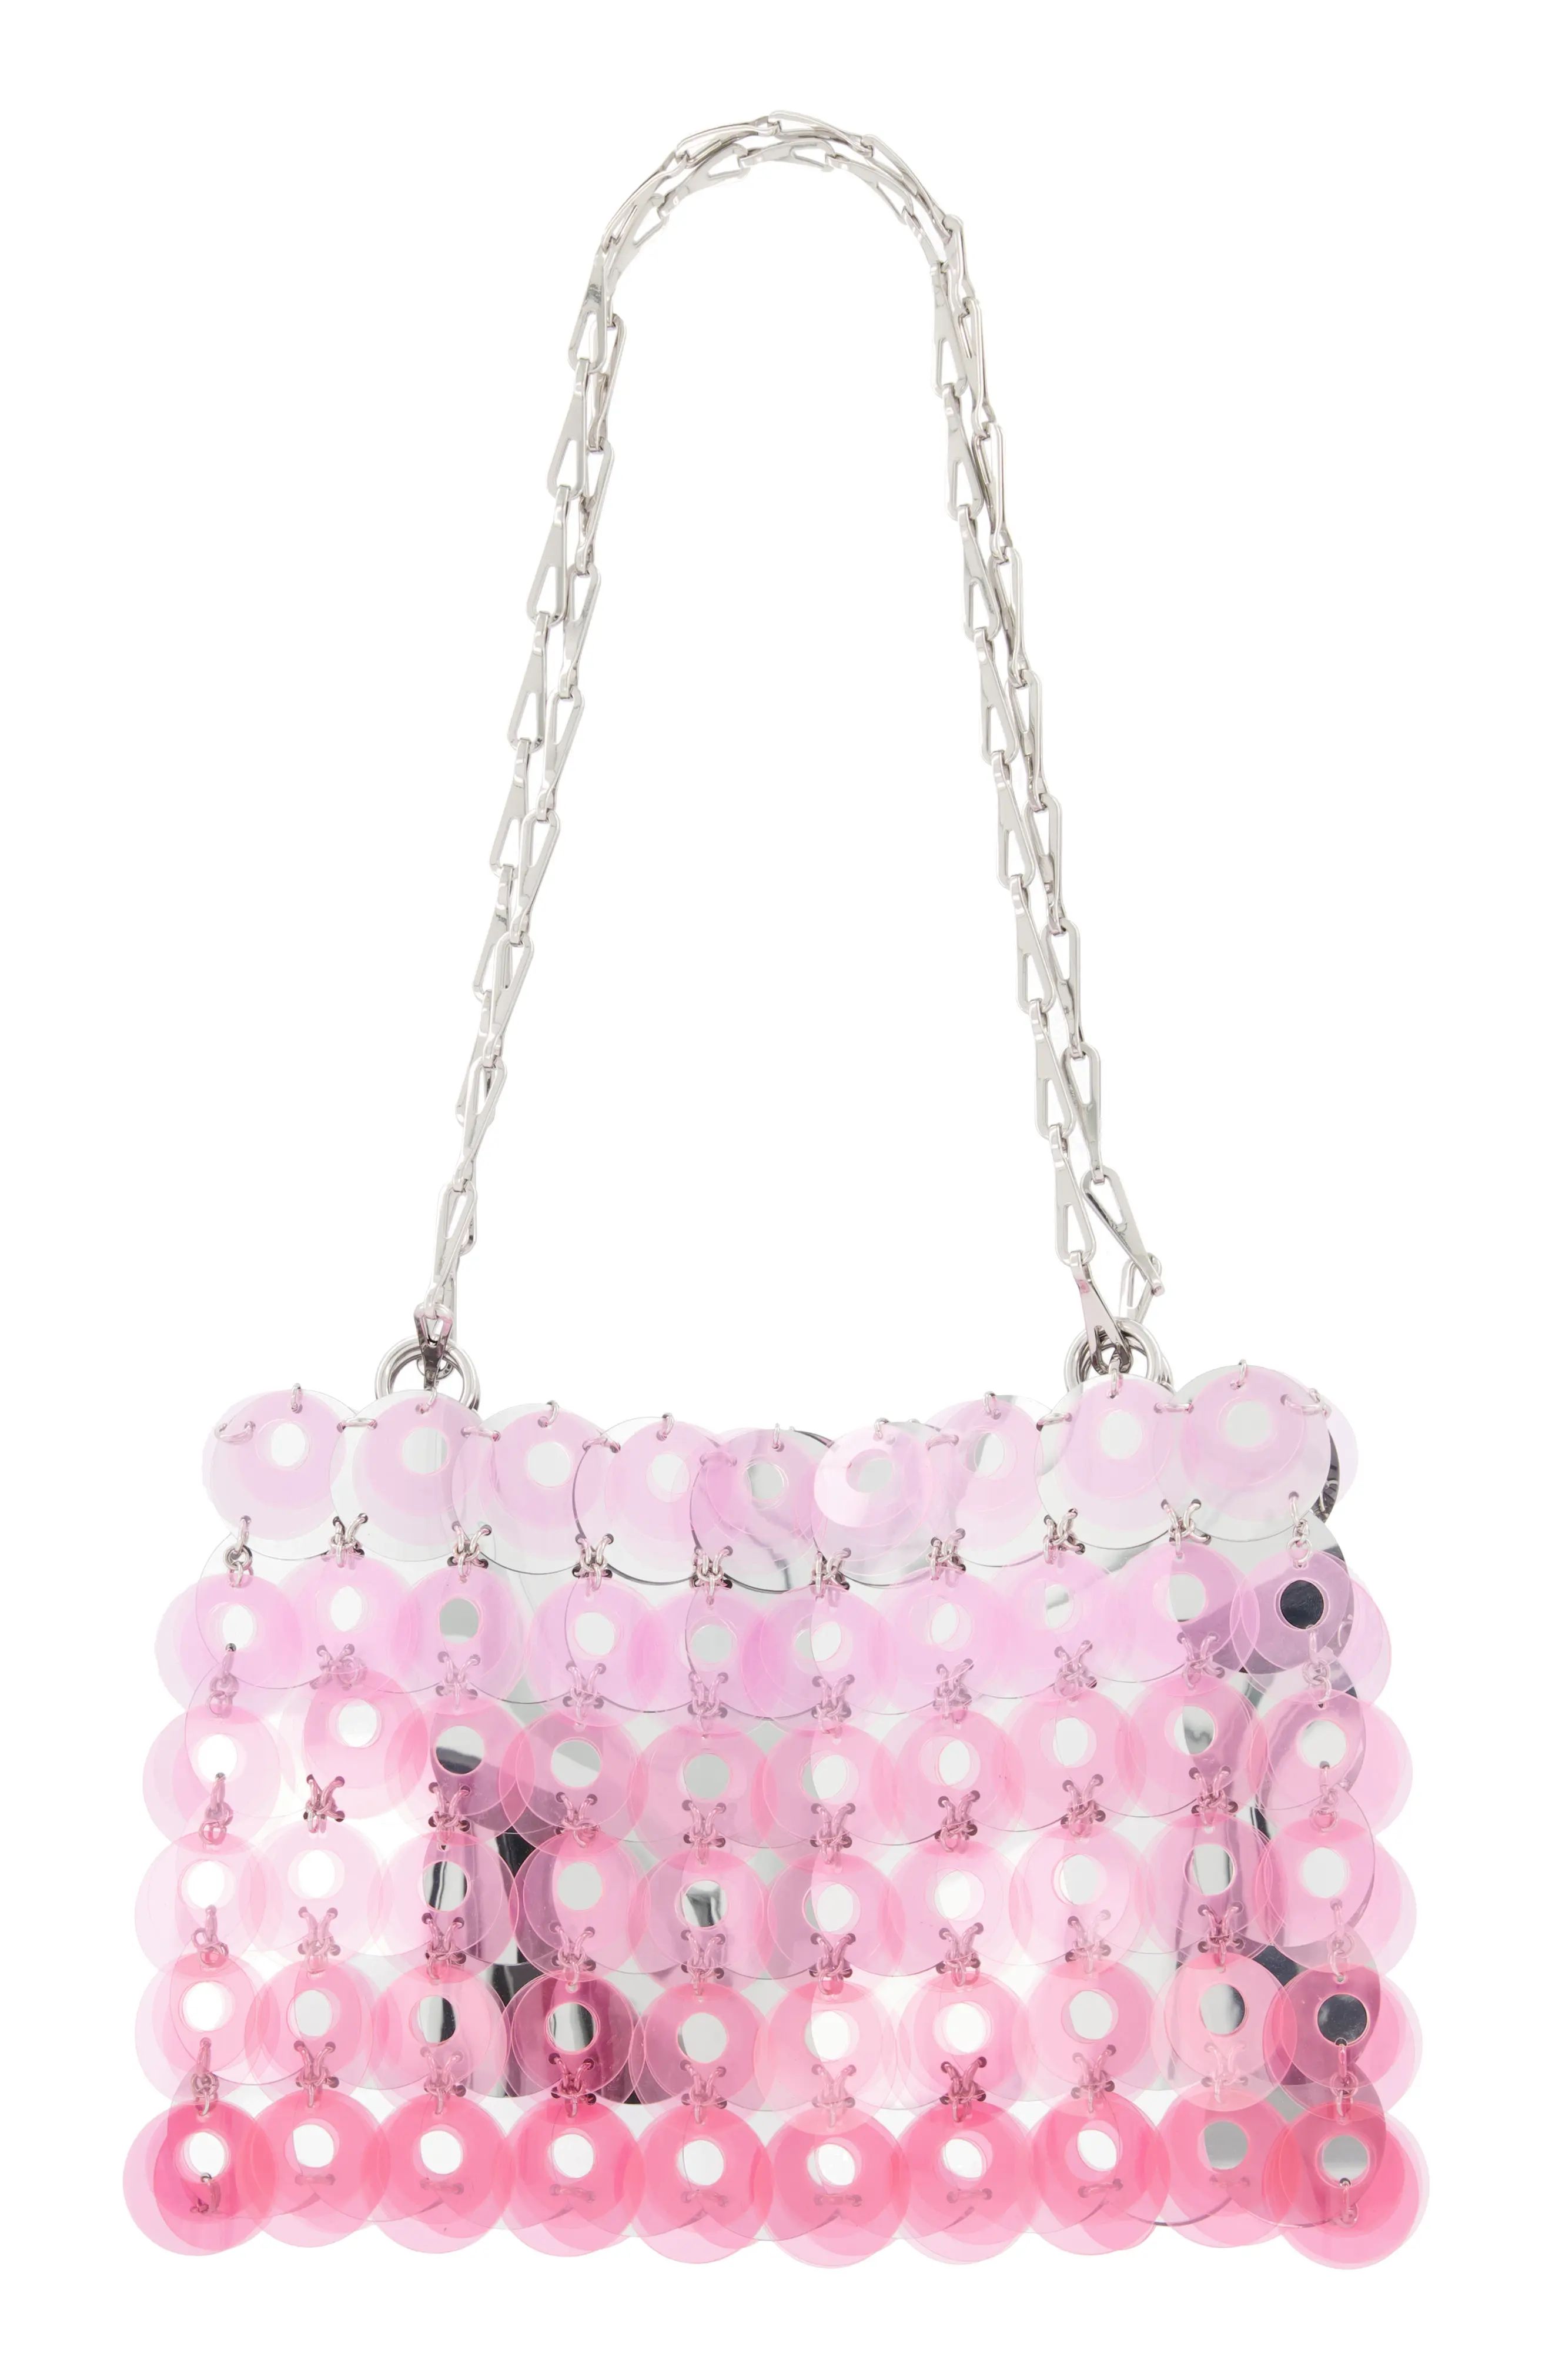 paco rabanne Sparkle Shoulder Bag in P665 Transparent Pink at Nordstrom | Nordstrom